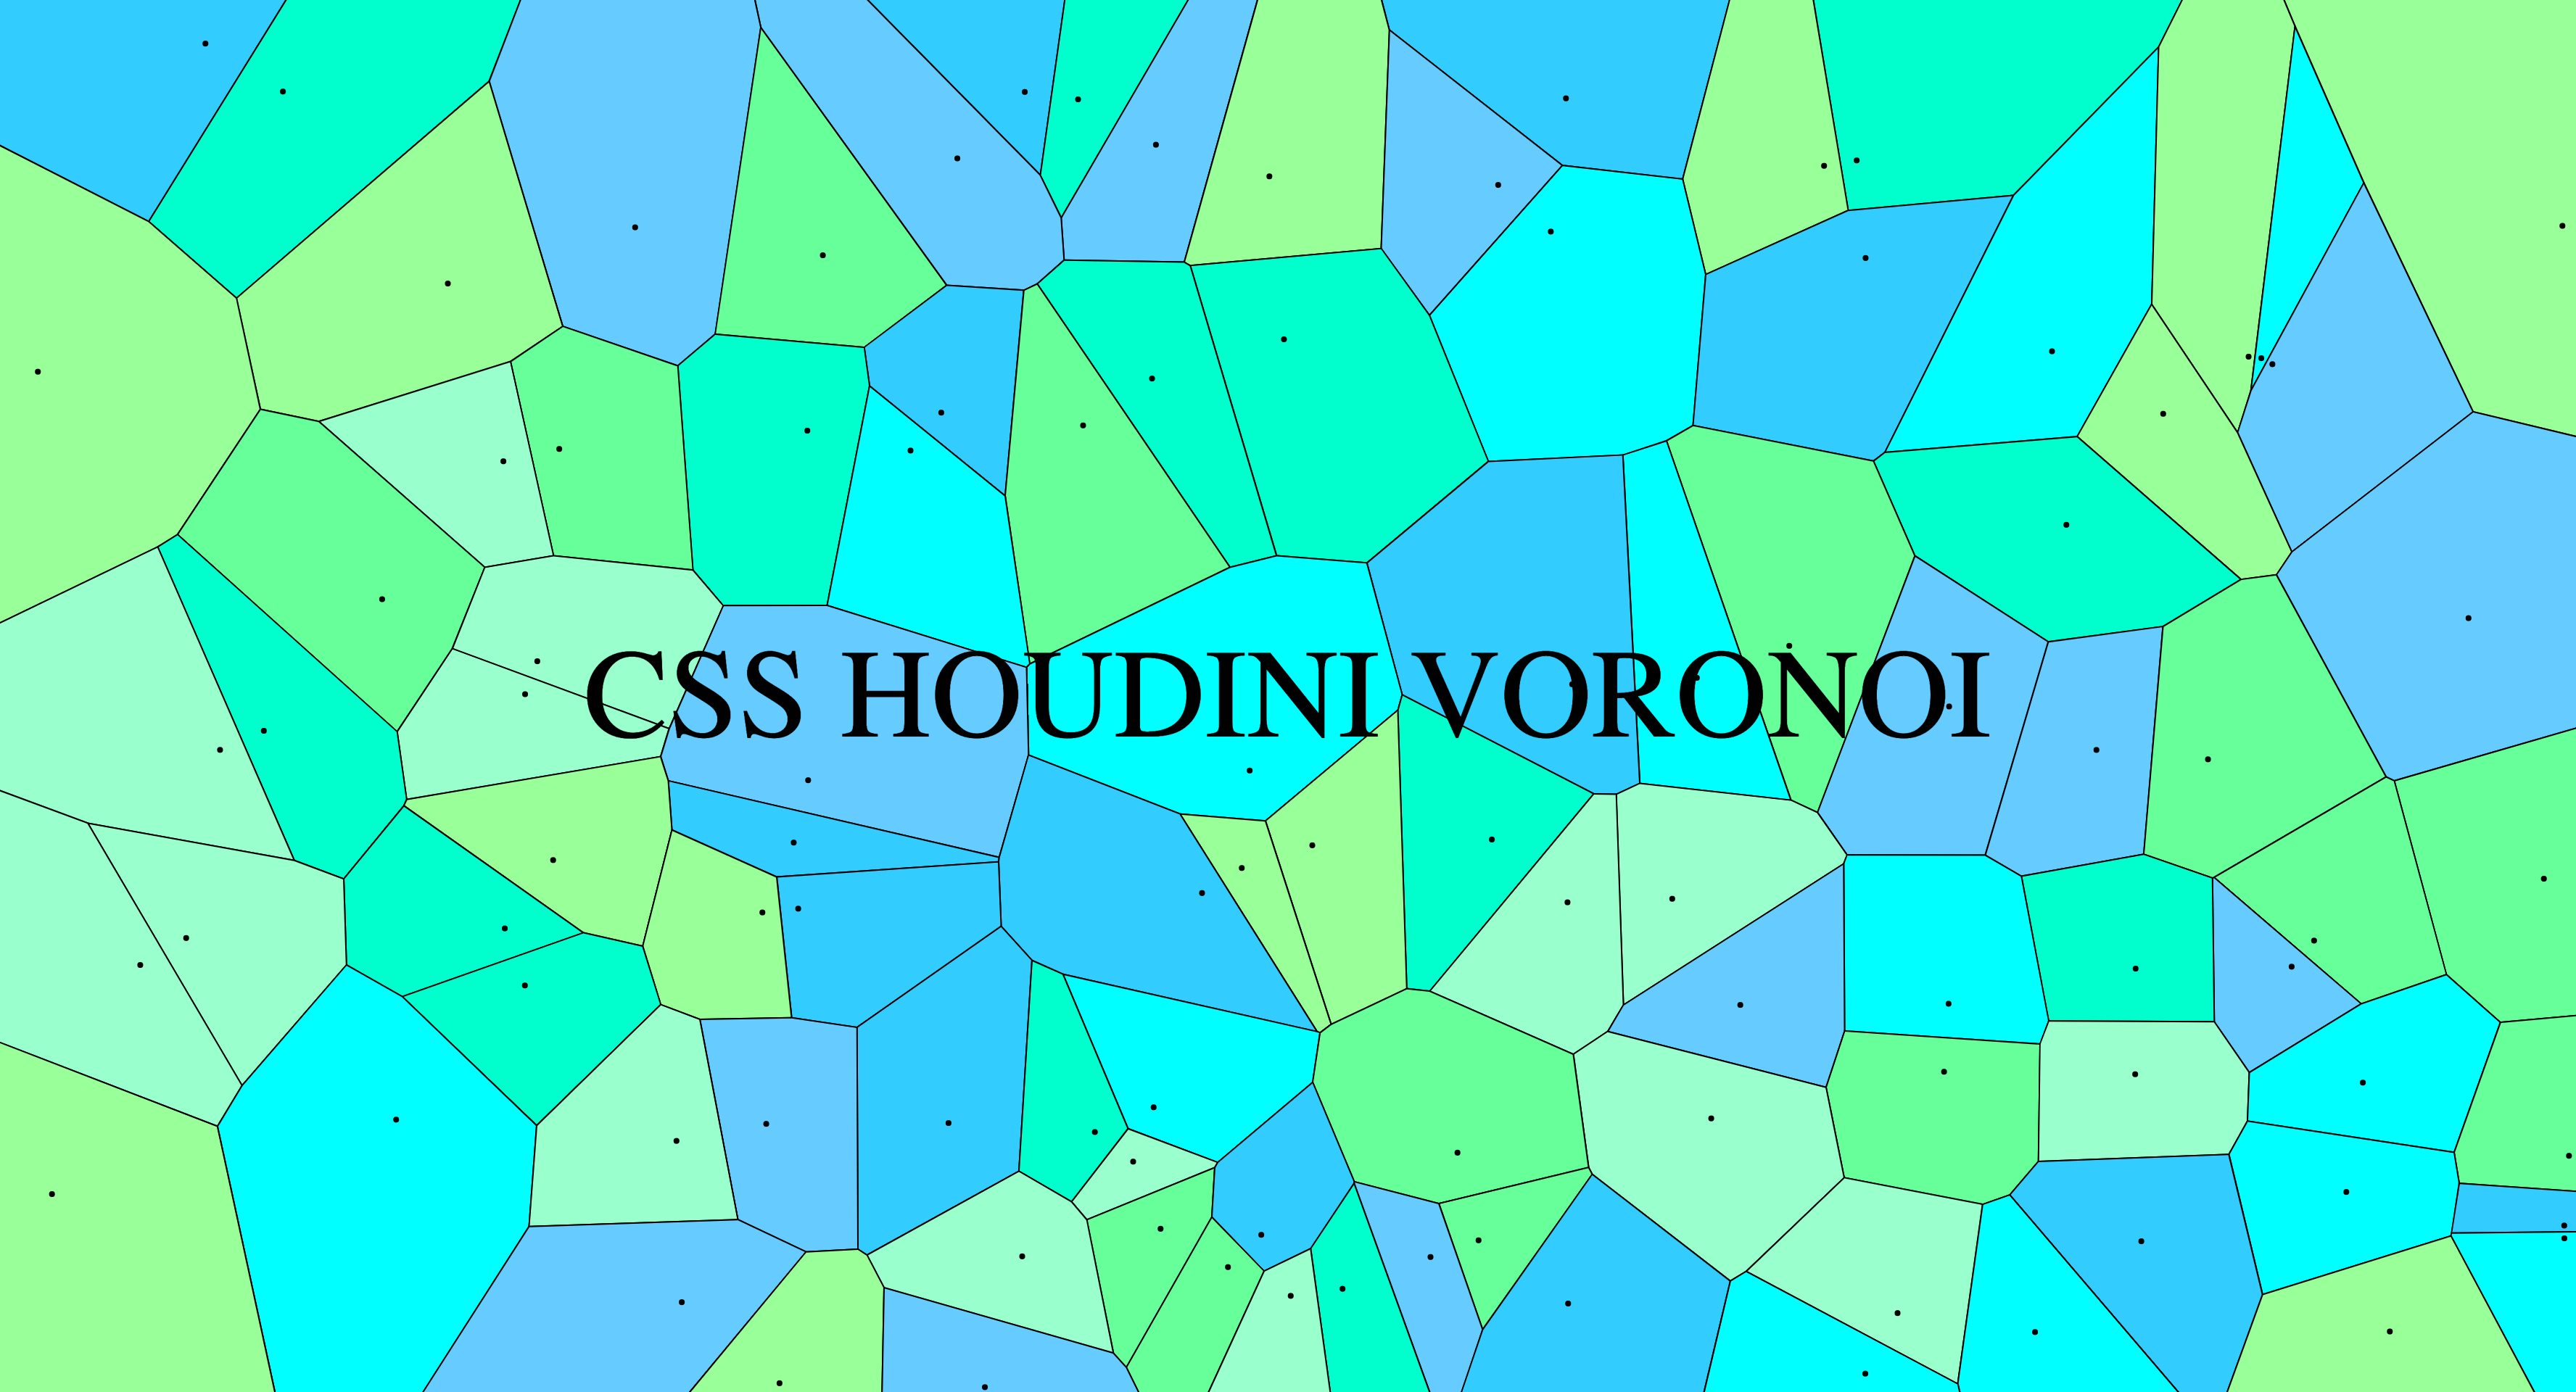 CSS Houdini Voronoi